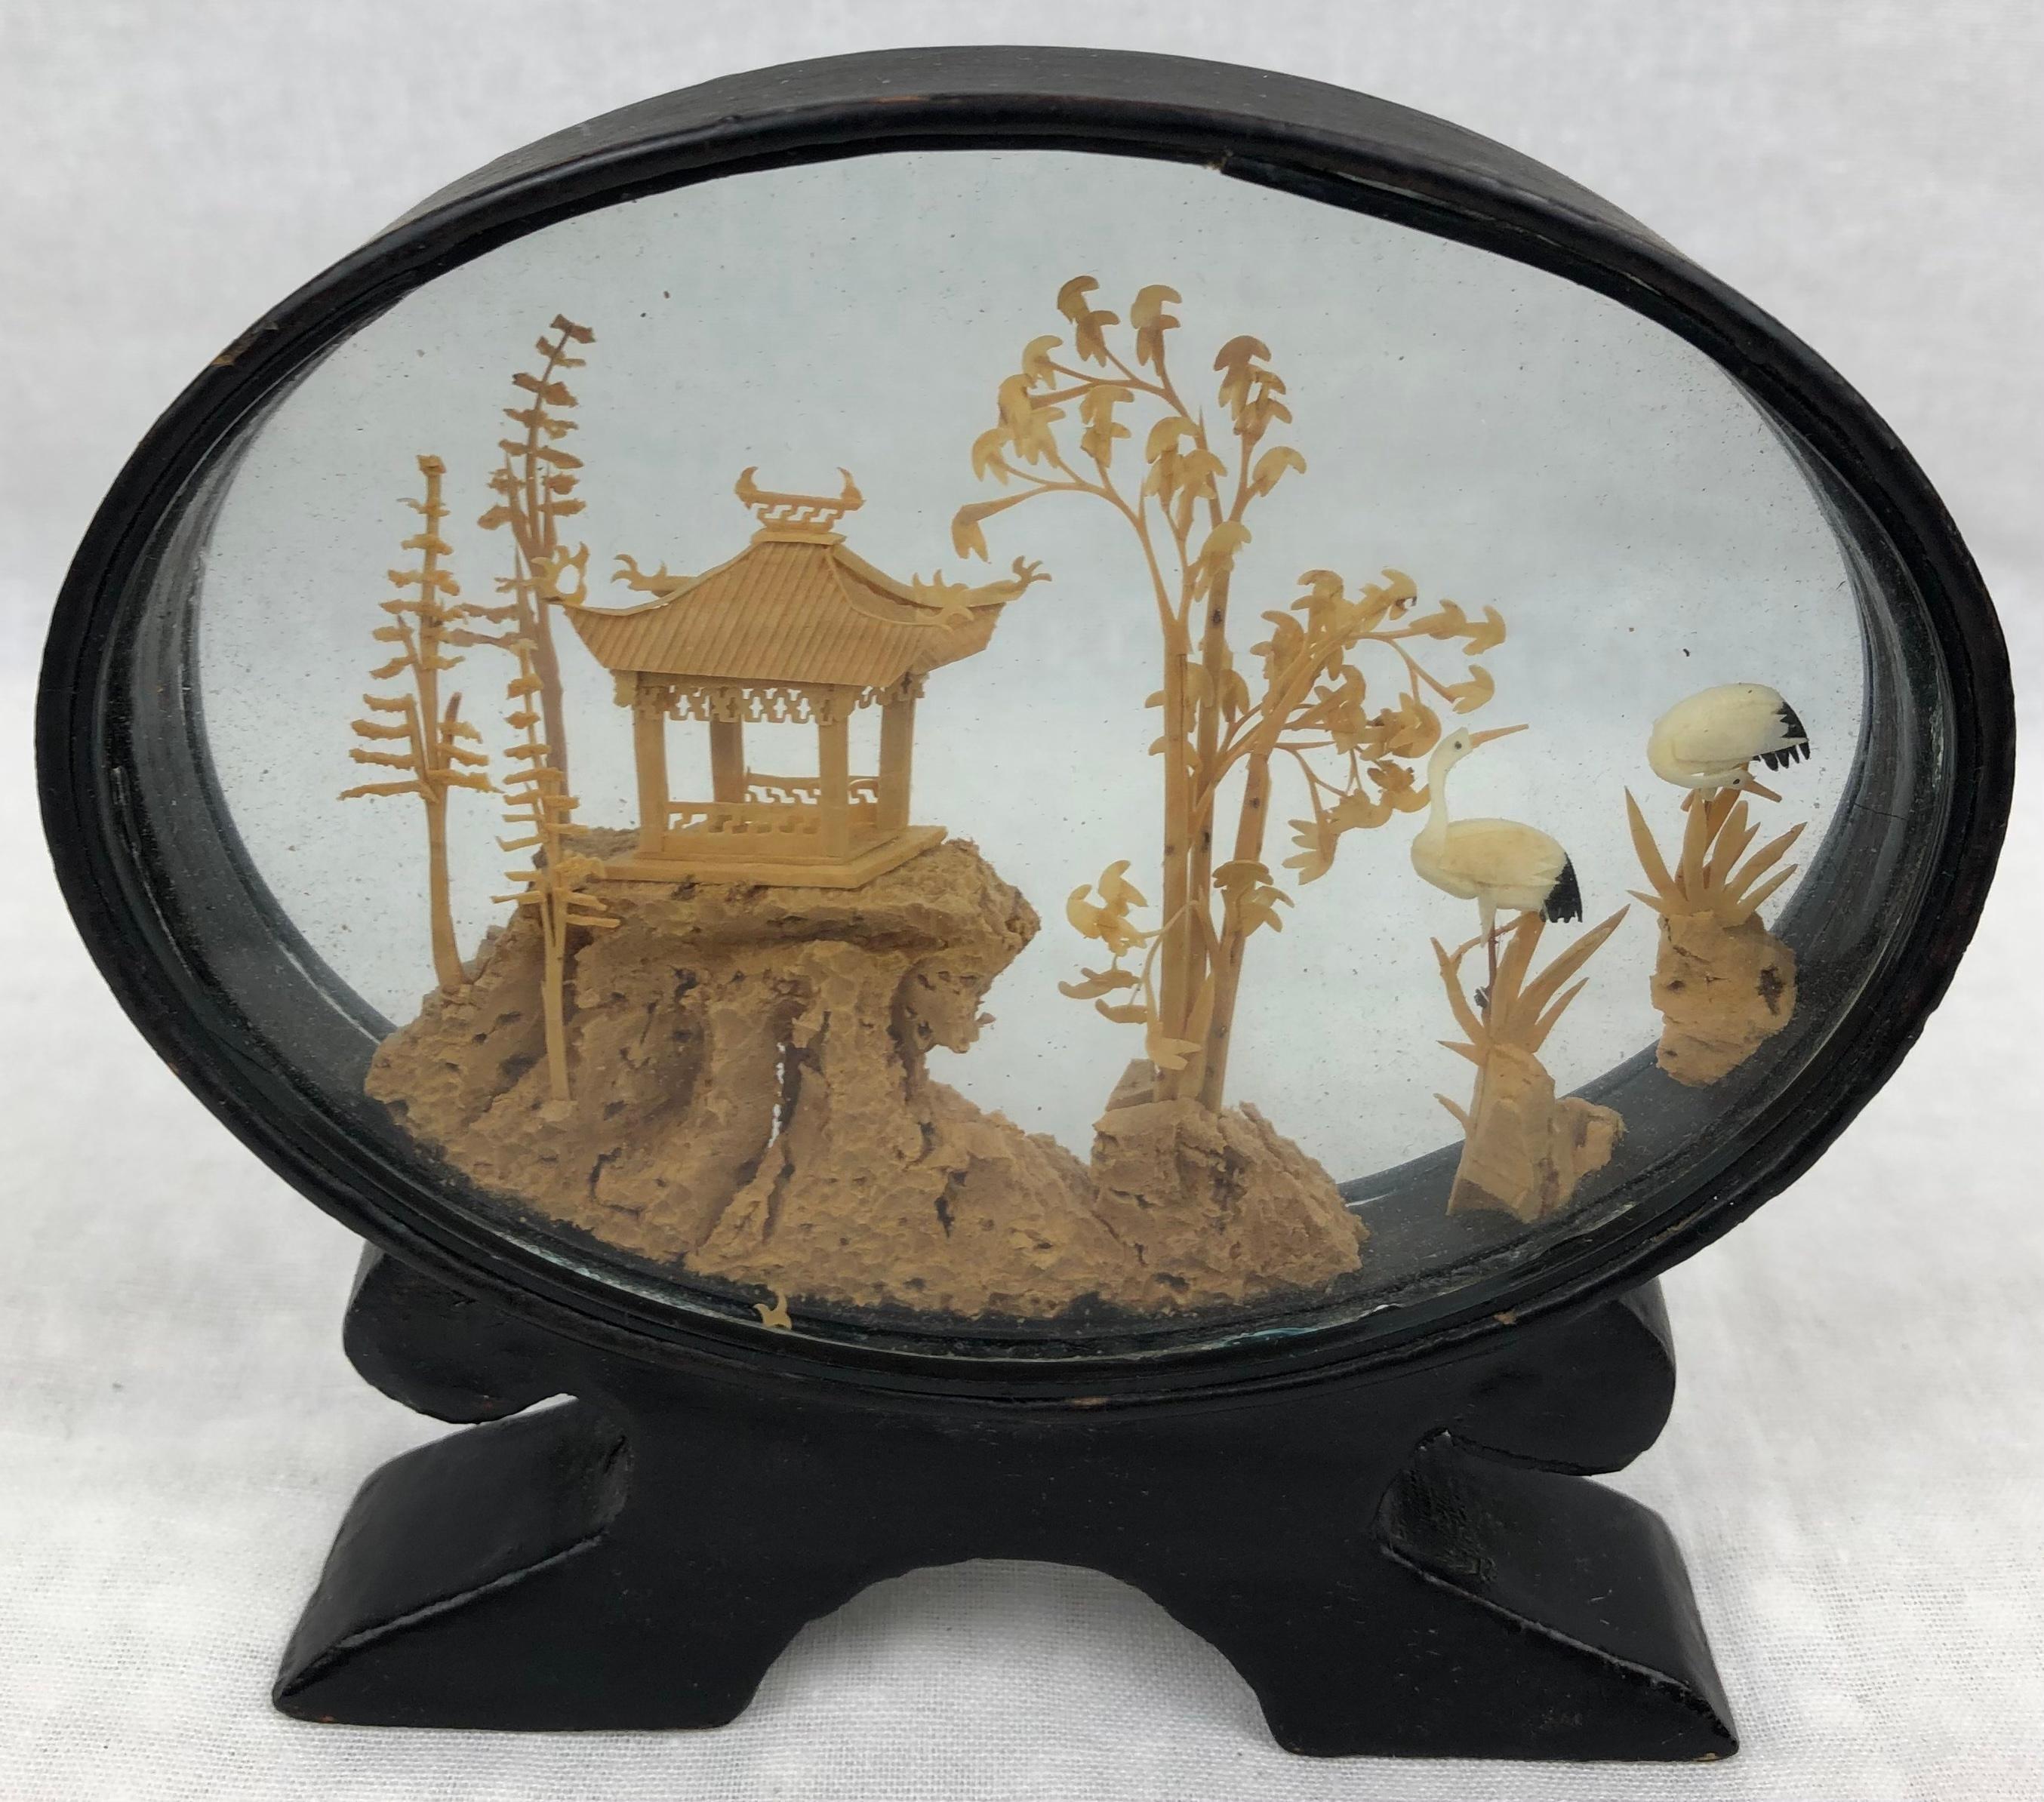 Schönes ovales chinesisches Korkdiorama aus dem 20.
Fein geschnitzte Dekoration in einer Glasvitrine und schwarz lackiertem Sockel.
Chinesische Landschaftsansicht, eine Pagode in einem traditionellen Garten mit Störchen. 

Traditionelle